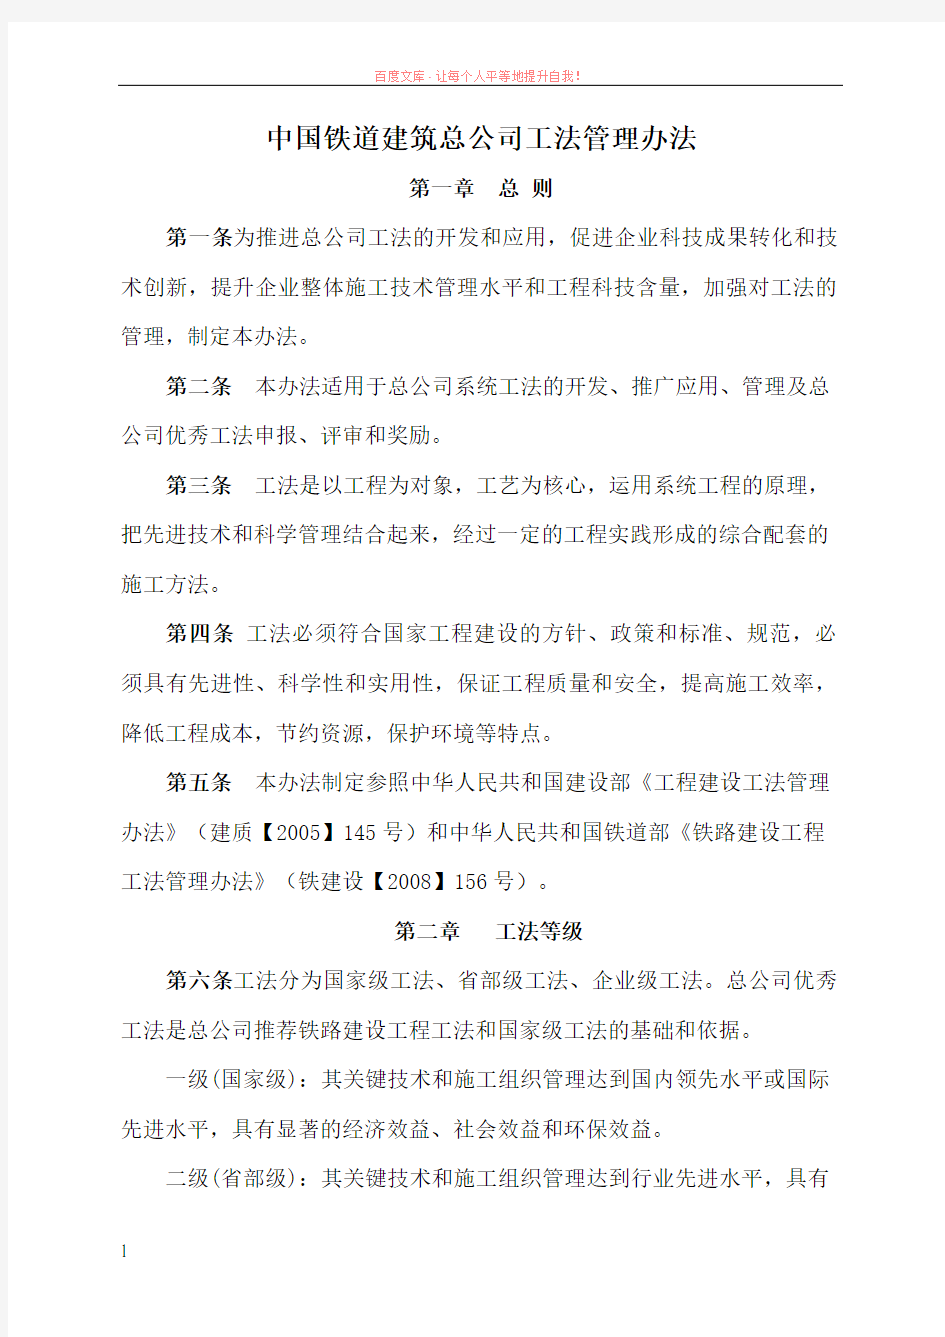 中国铁道建筑总公司工法管理办法201990号文 (1)